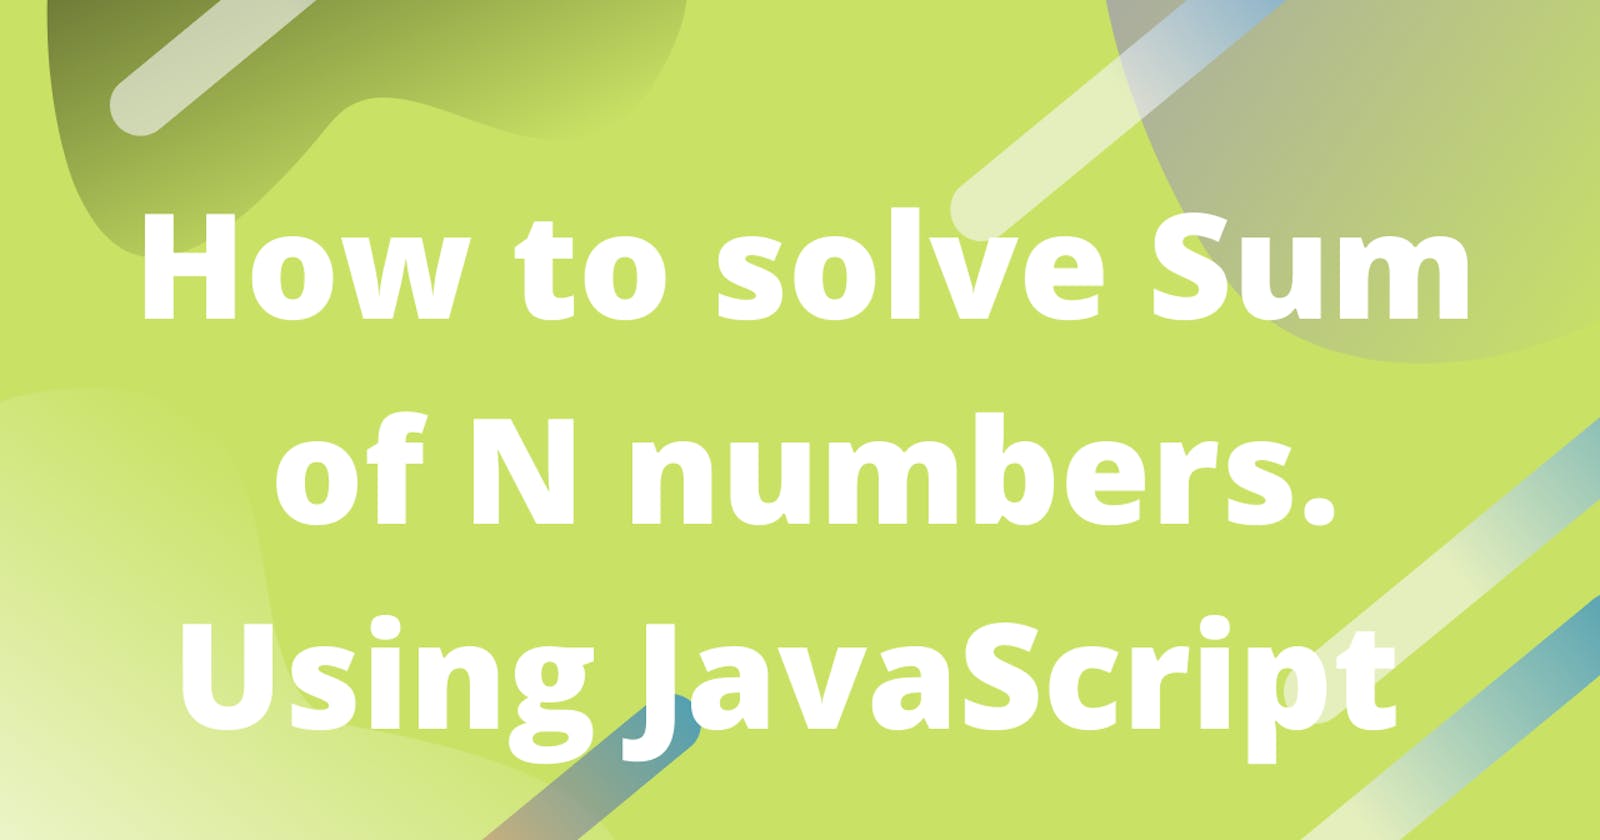 Solving Sum of N Numbers